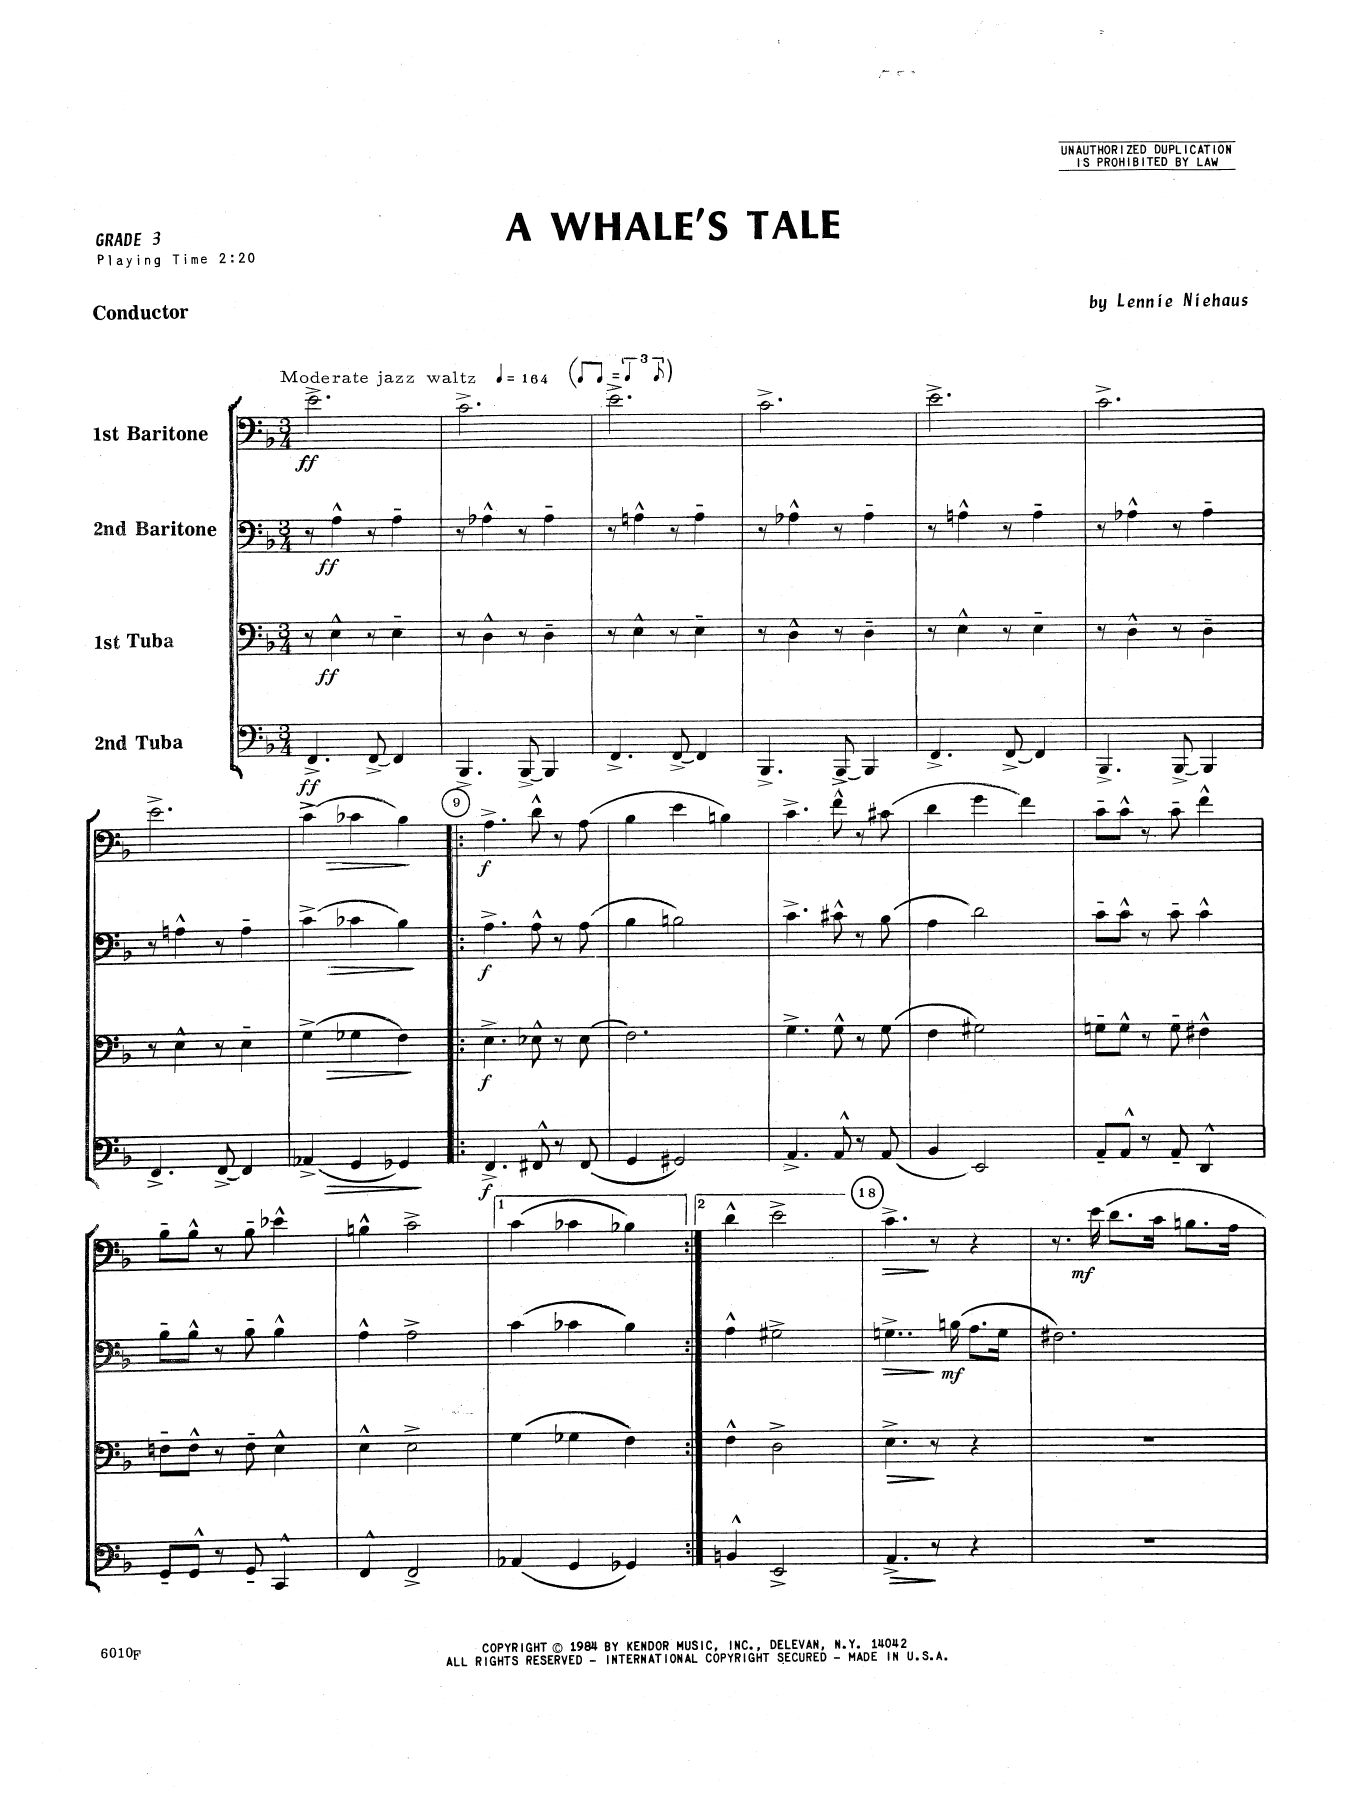 Download Lennie Niehaus A Whale's Tale - Full Score Sheet Music